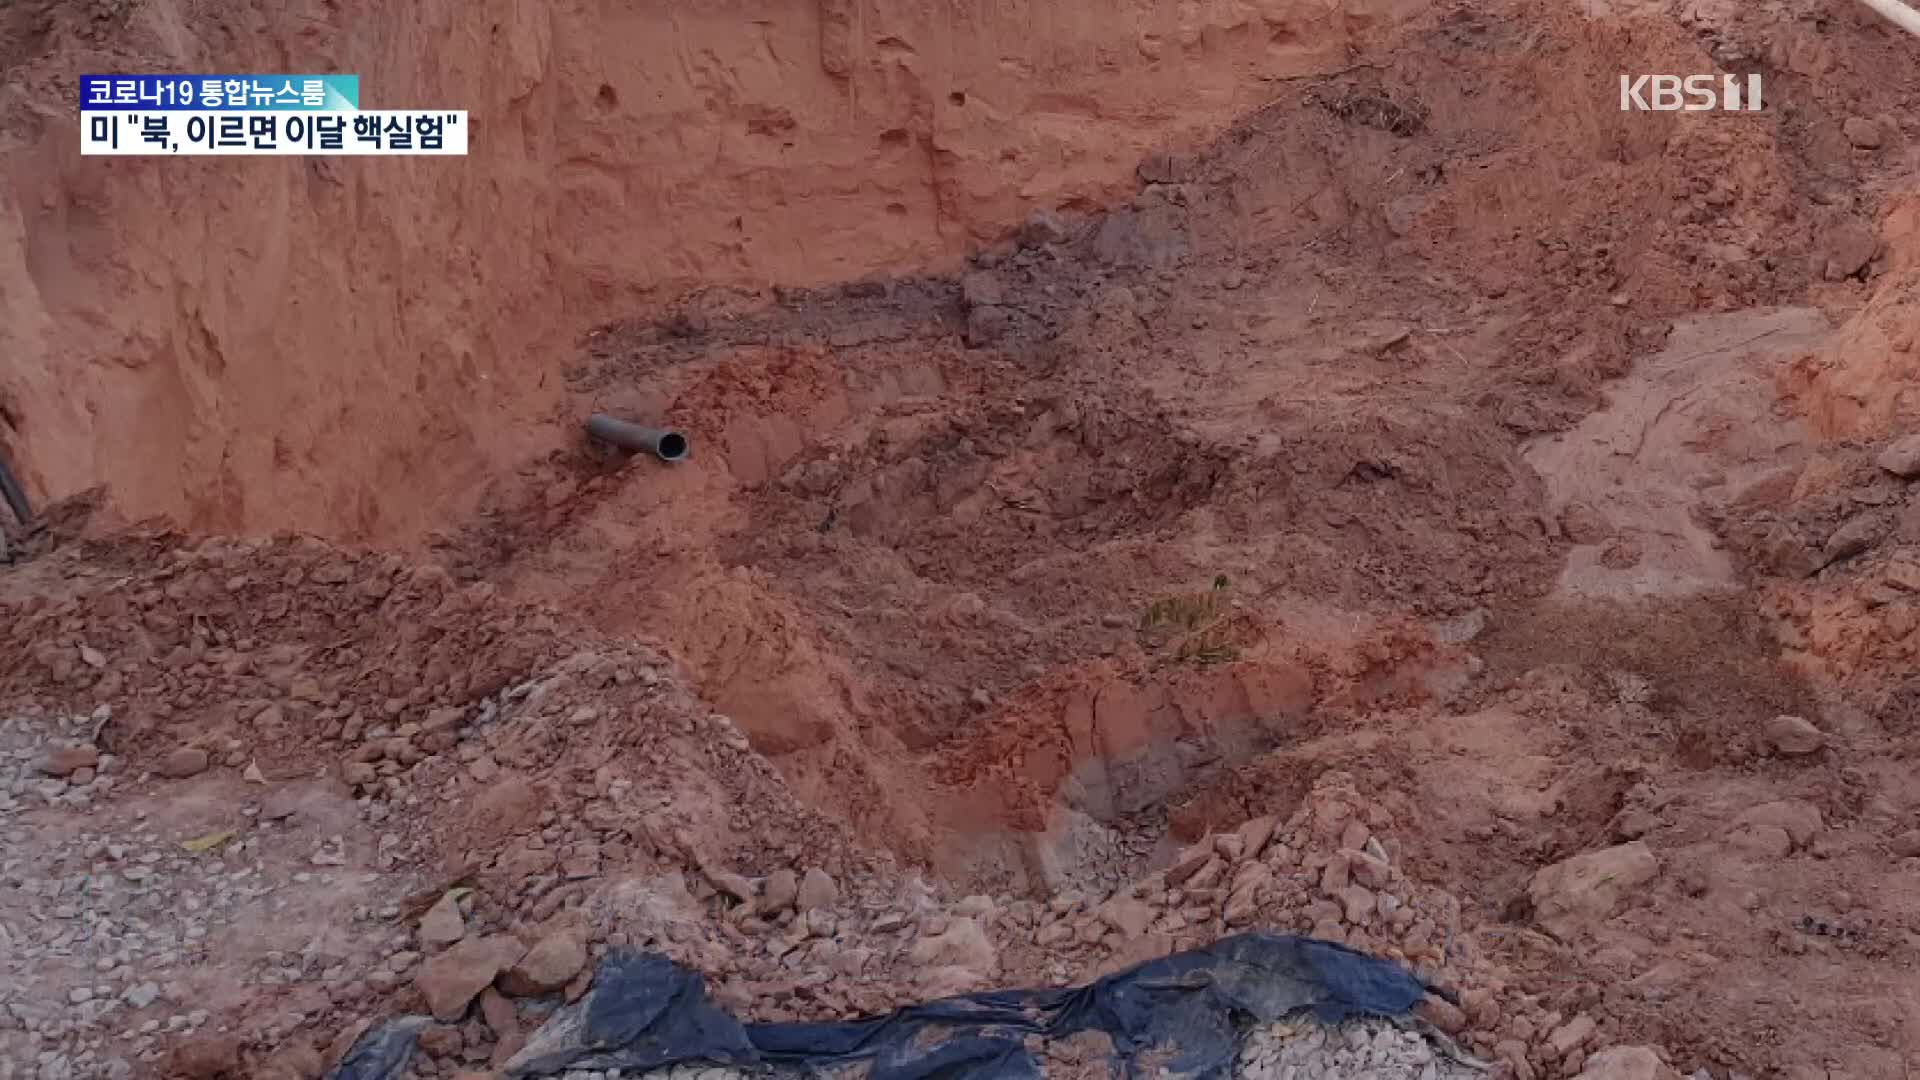 브라질서 토사붕괴로 한인 어린이 5명 사망…“철저한 조사 요청”